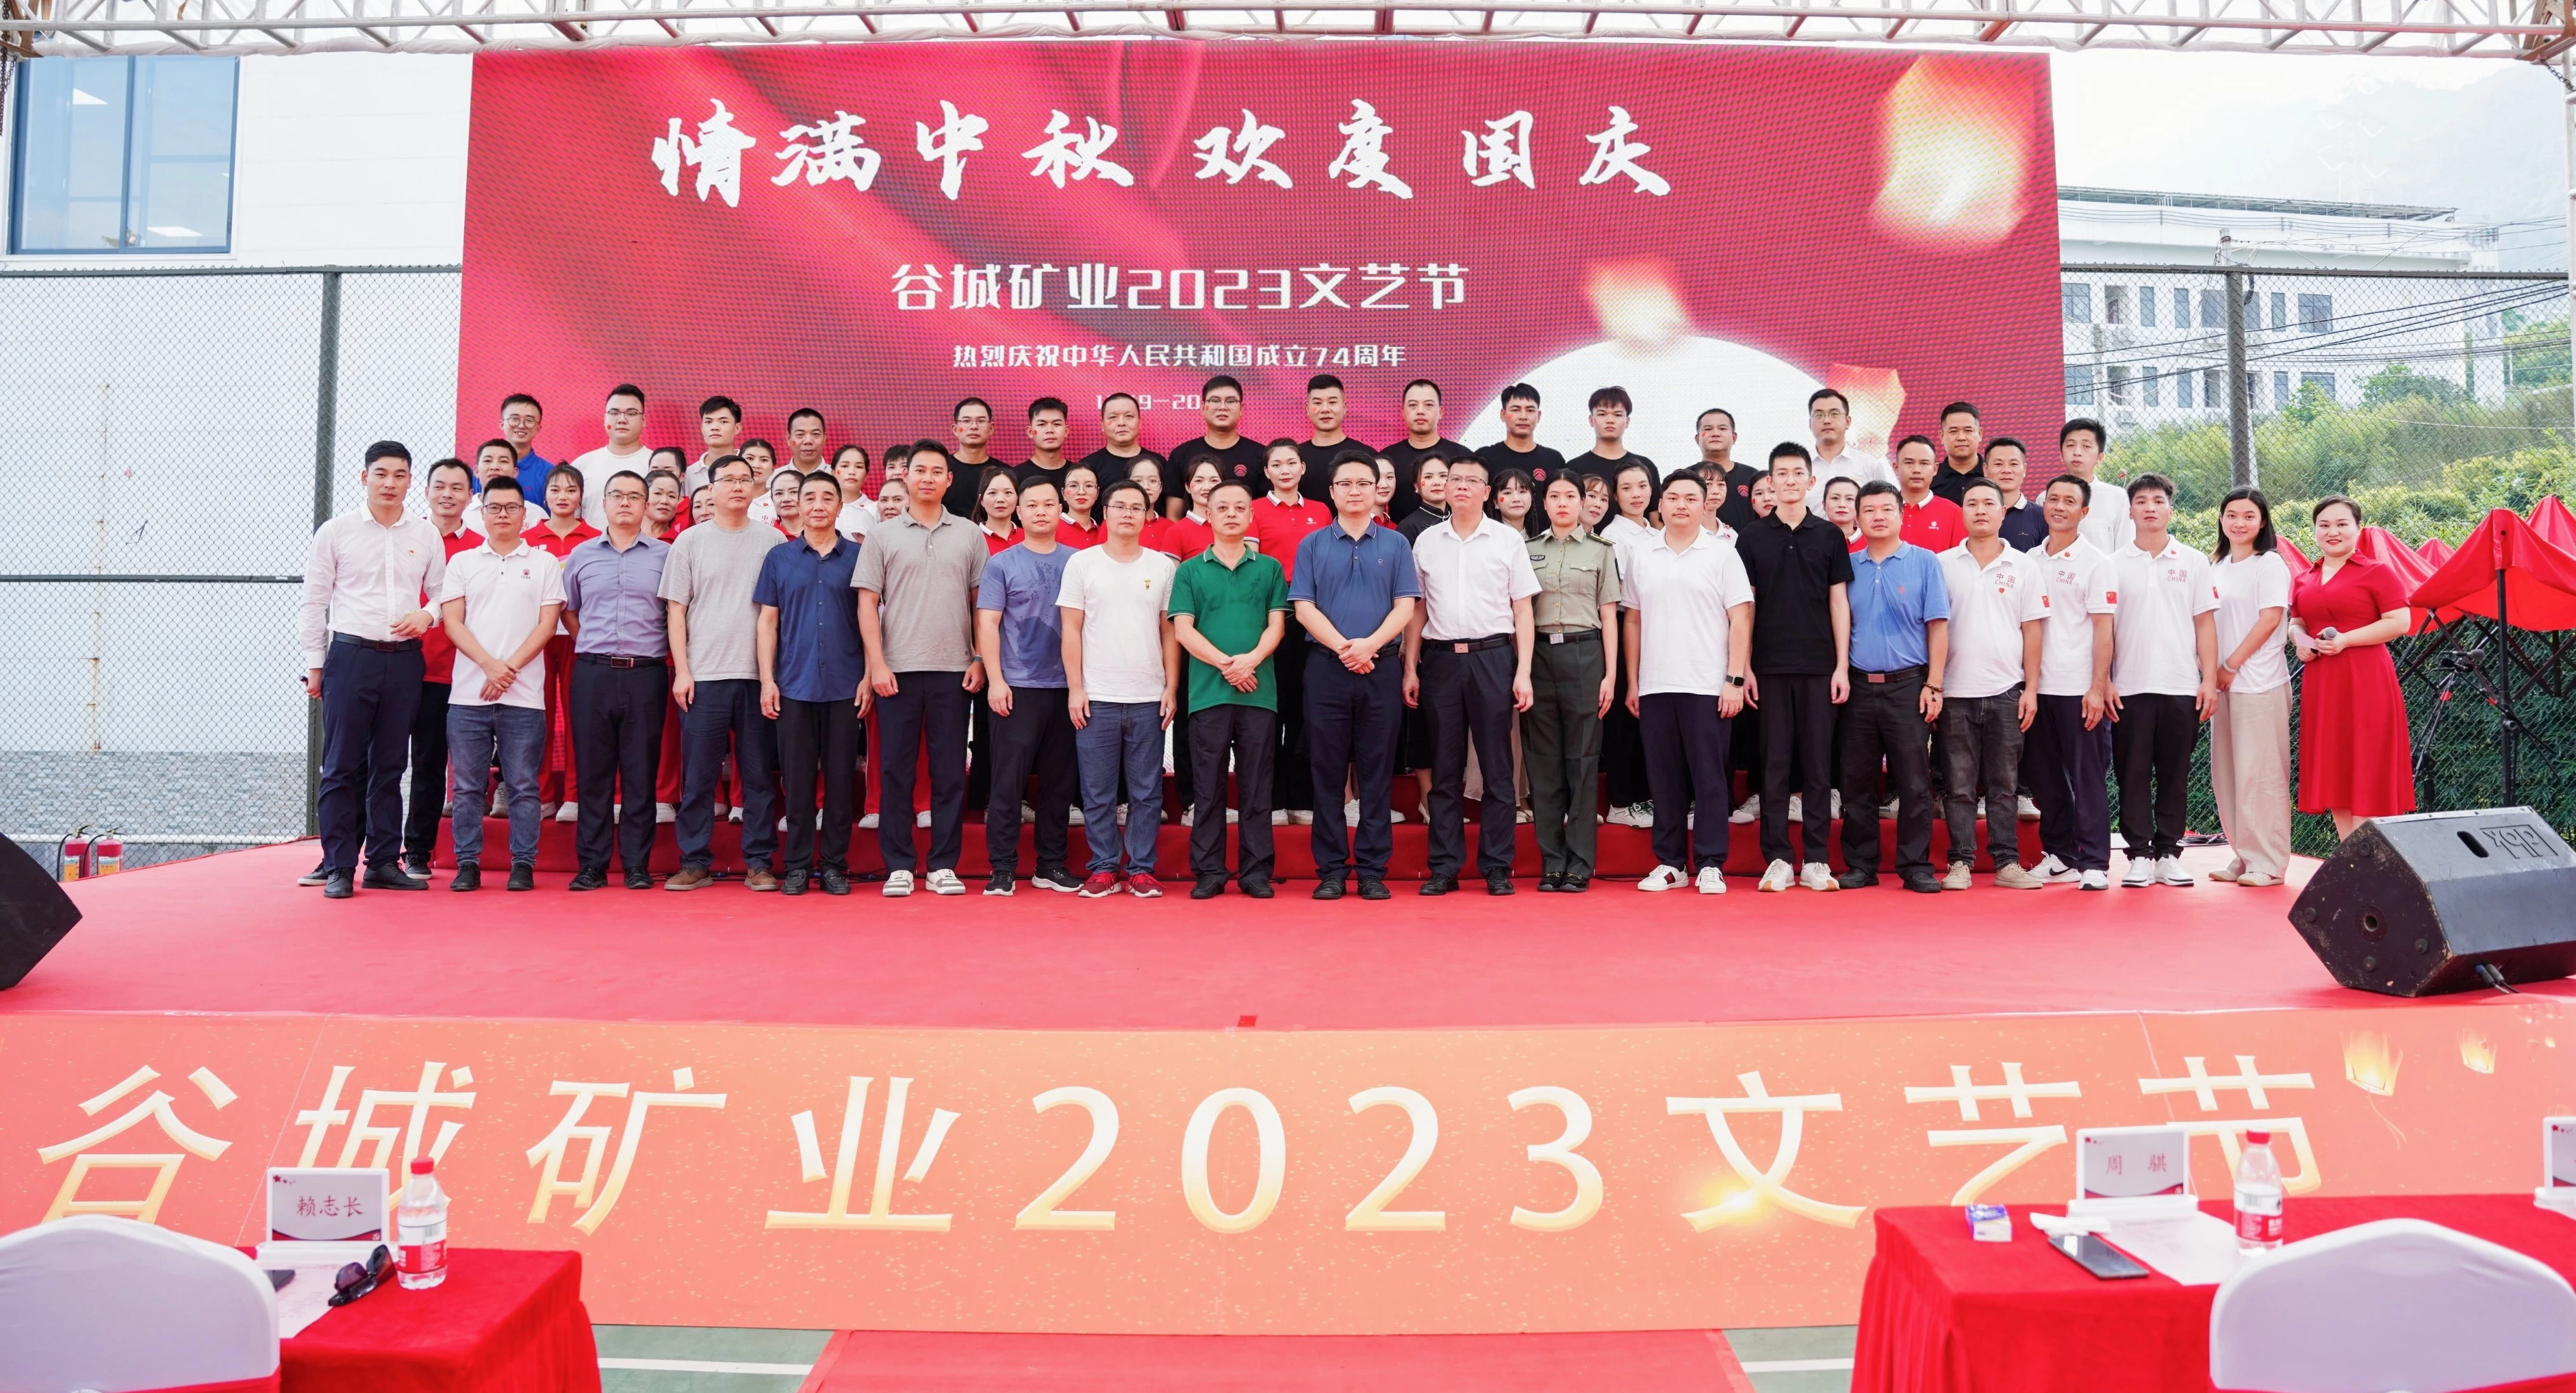 情滿中(zhōng)秋 歡度國慶|谷城礦業2023年文藝節活動盛況